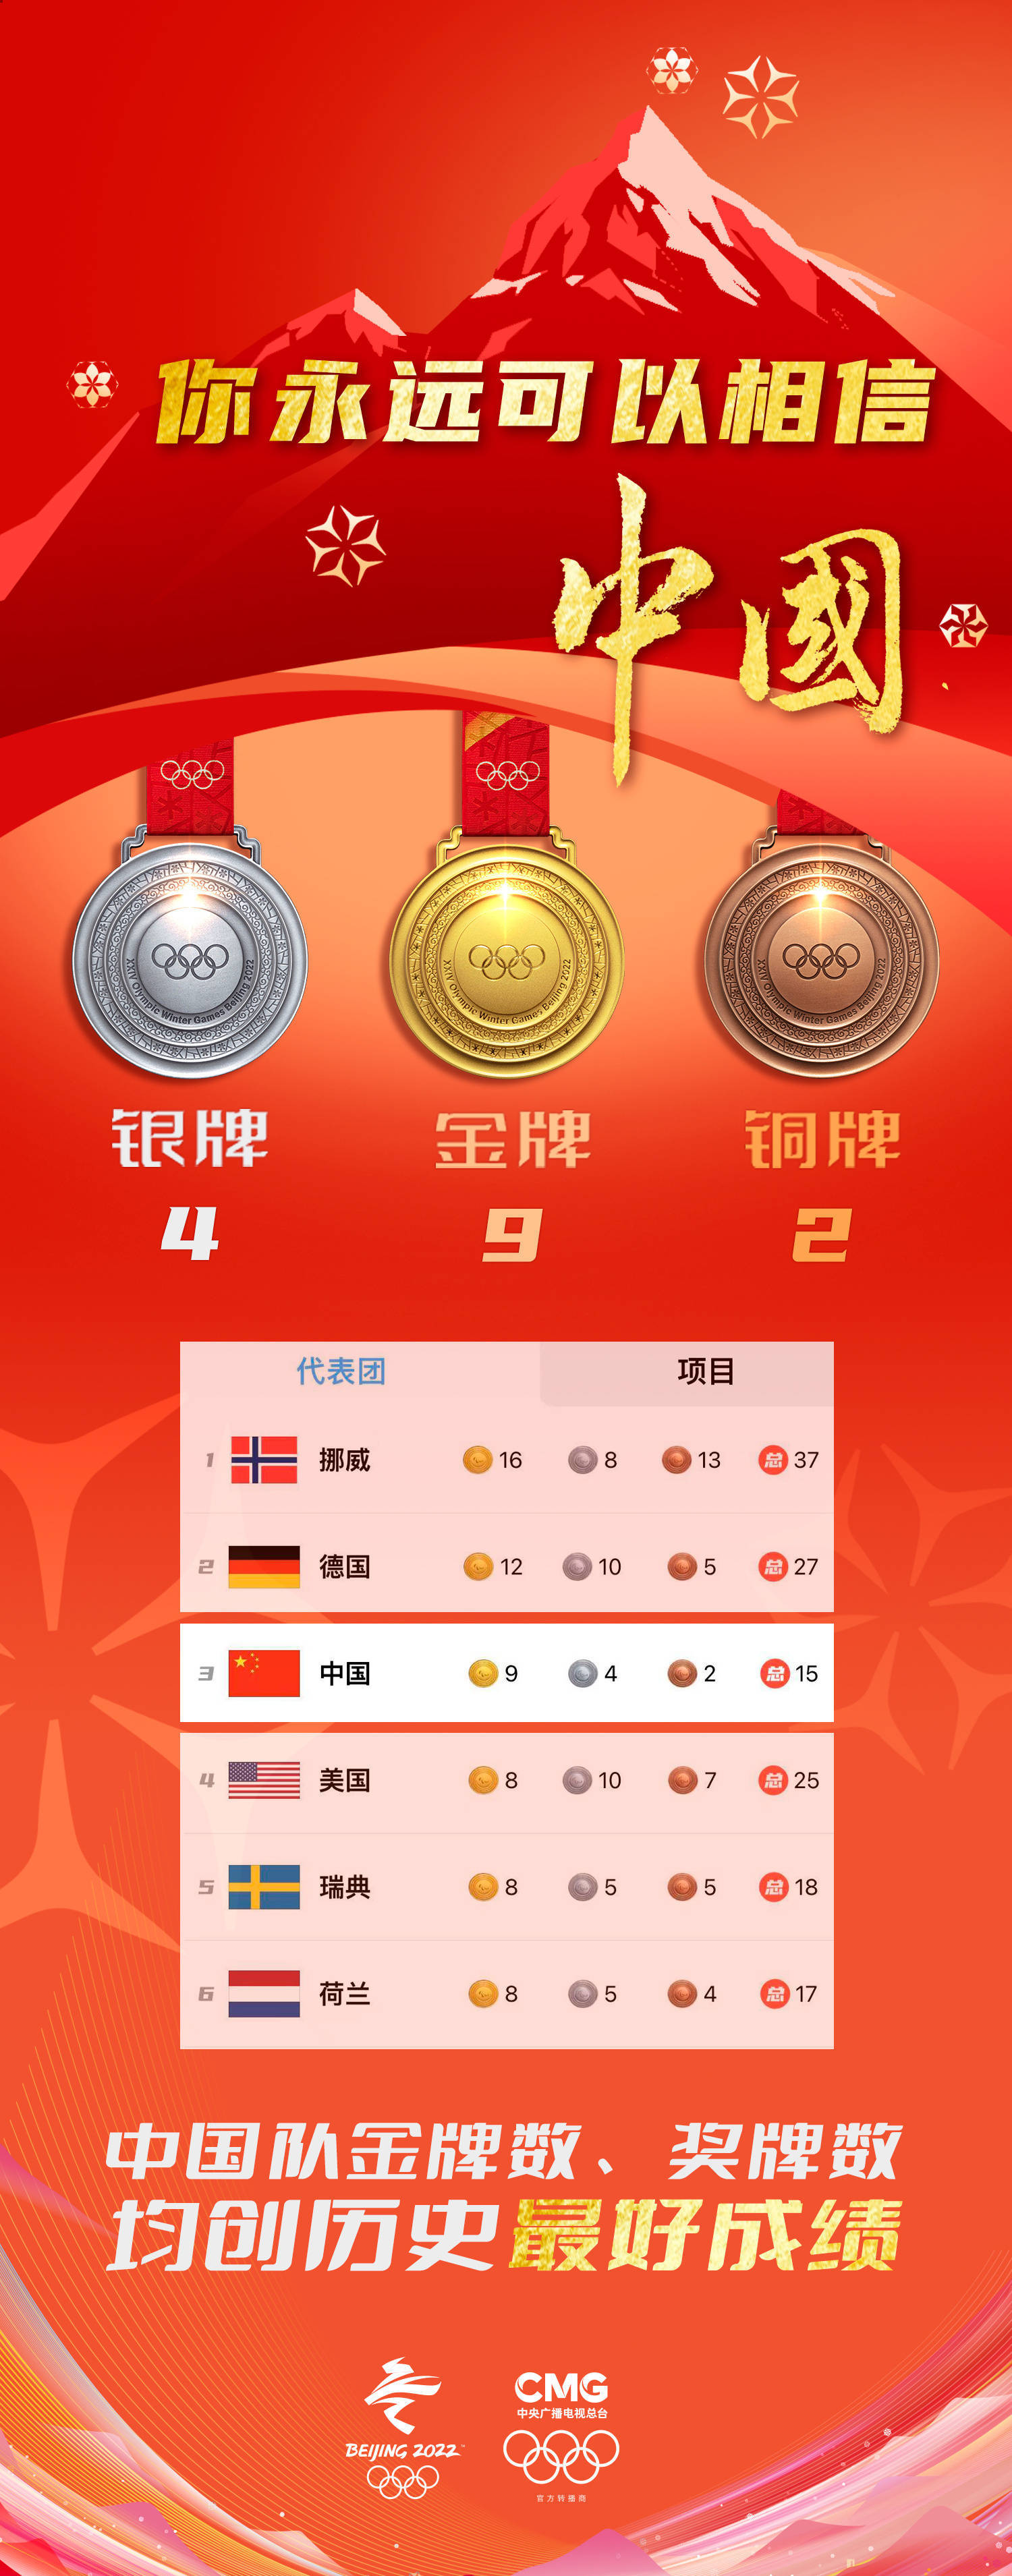 历史|祝贺！中国队位列奖牌榜第三位 金牌数、奖牌数均创历史最好成绩